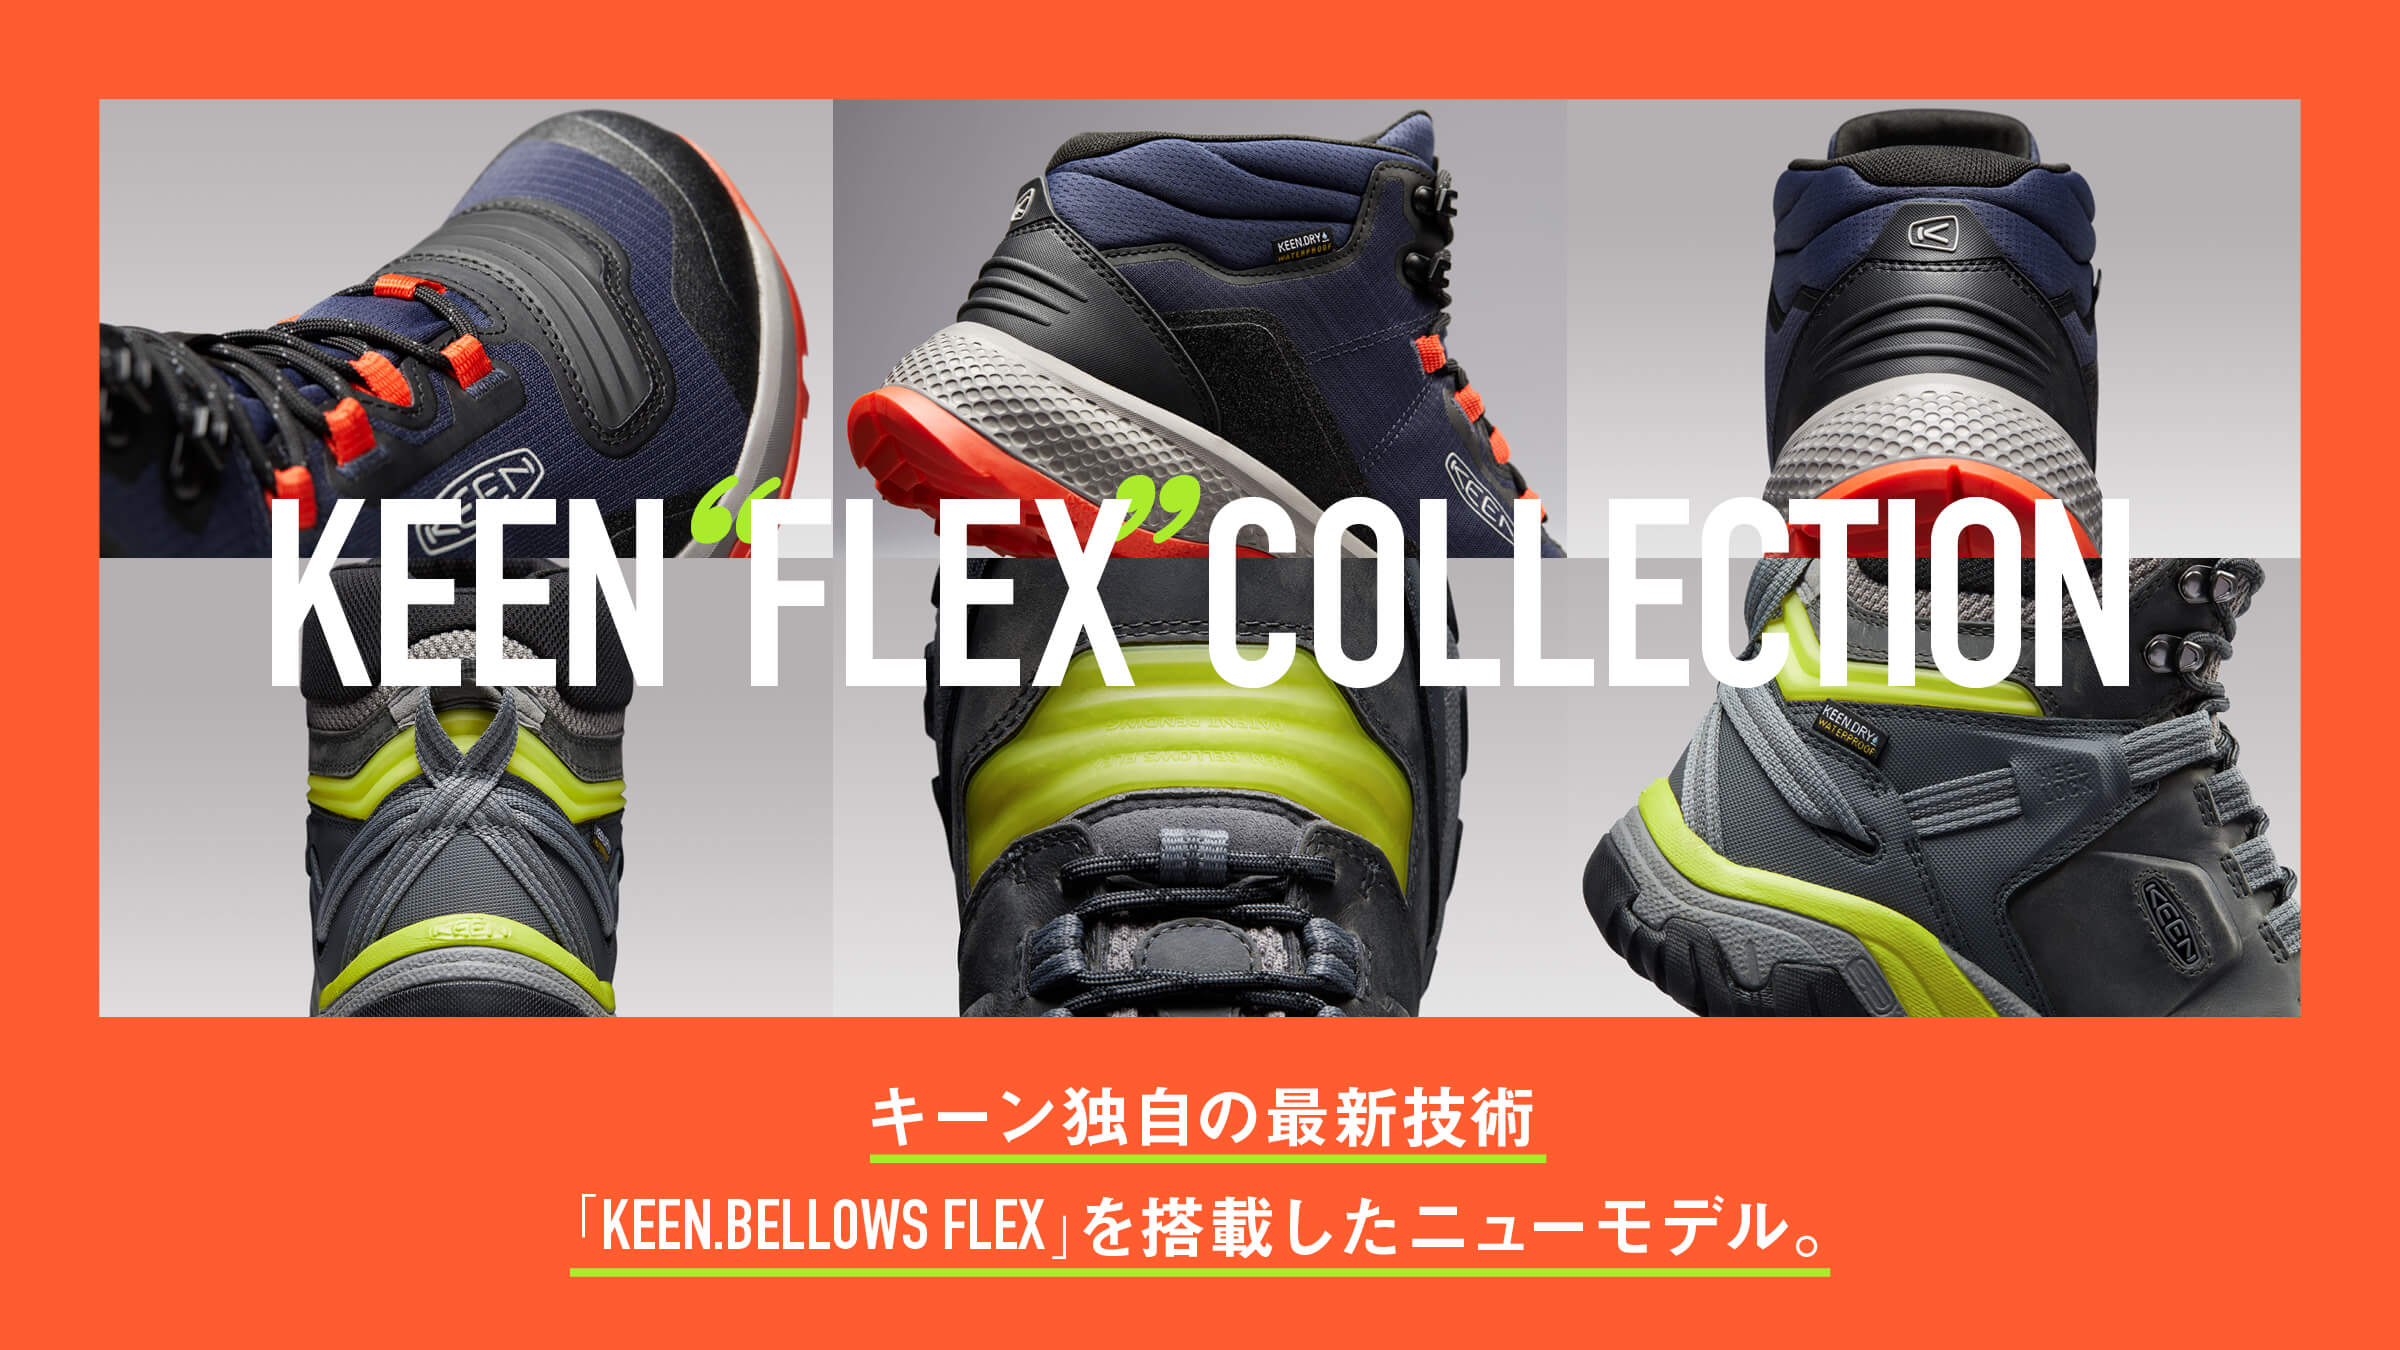 キーン独自の最新技術「KEEN.BELLOWS FLEX」を搭載したニューモデル。